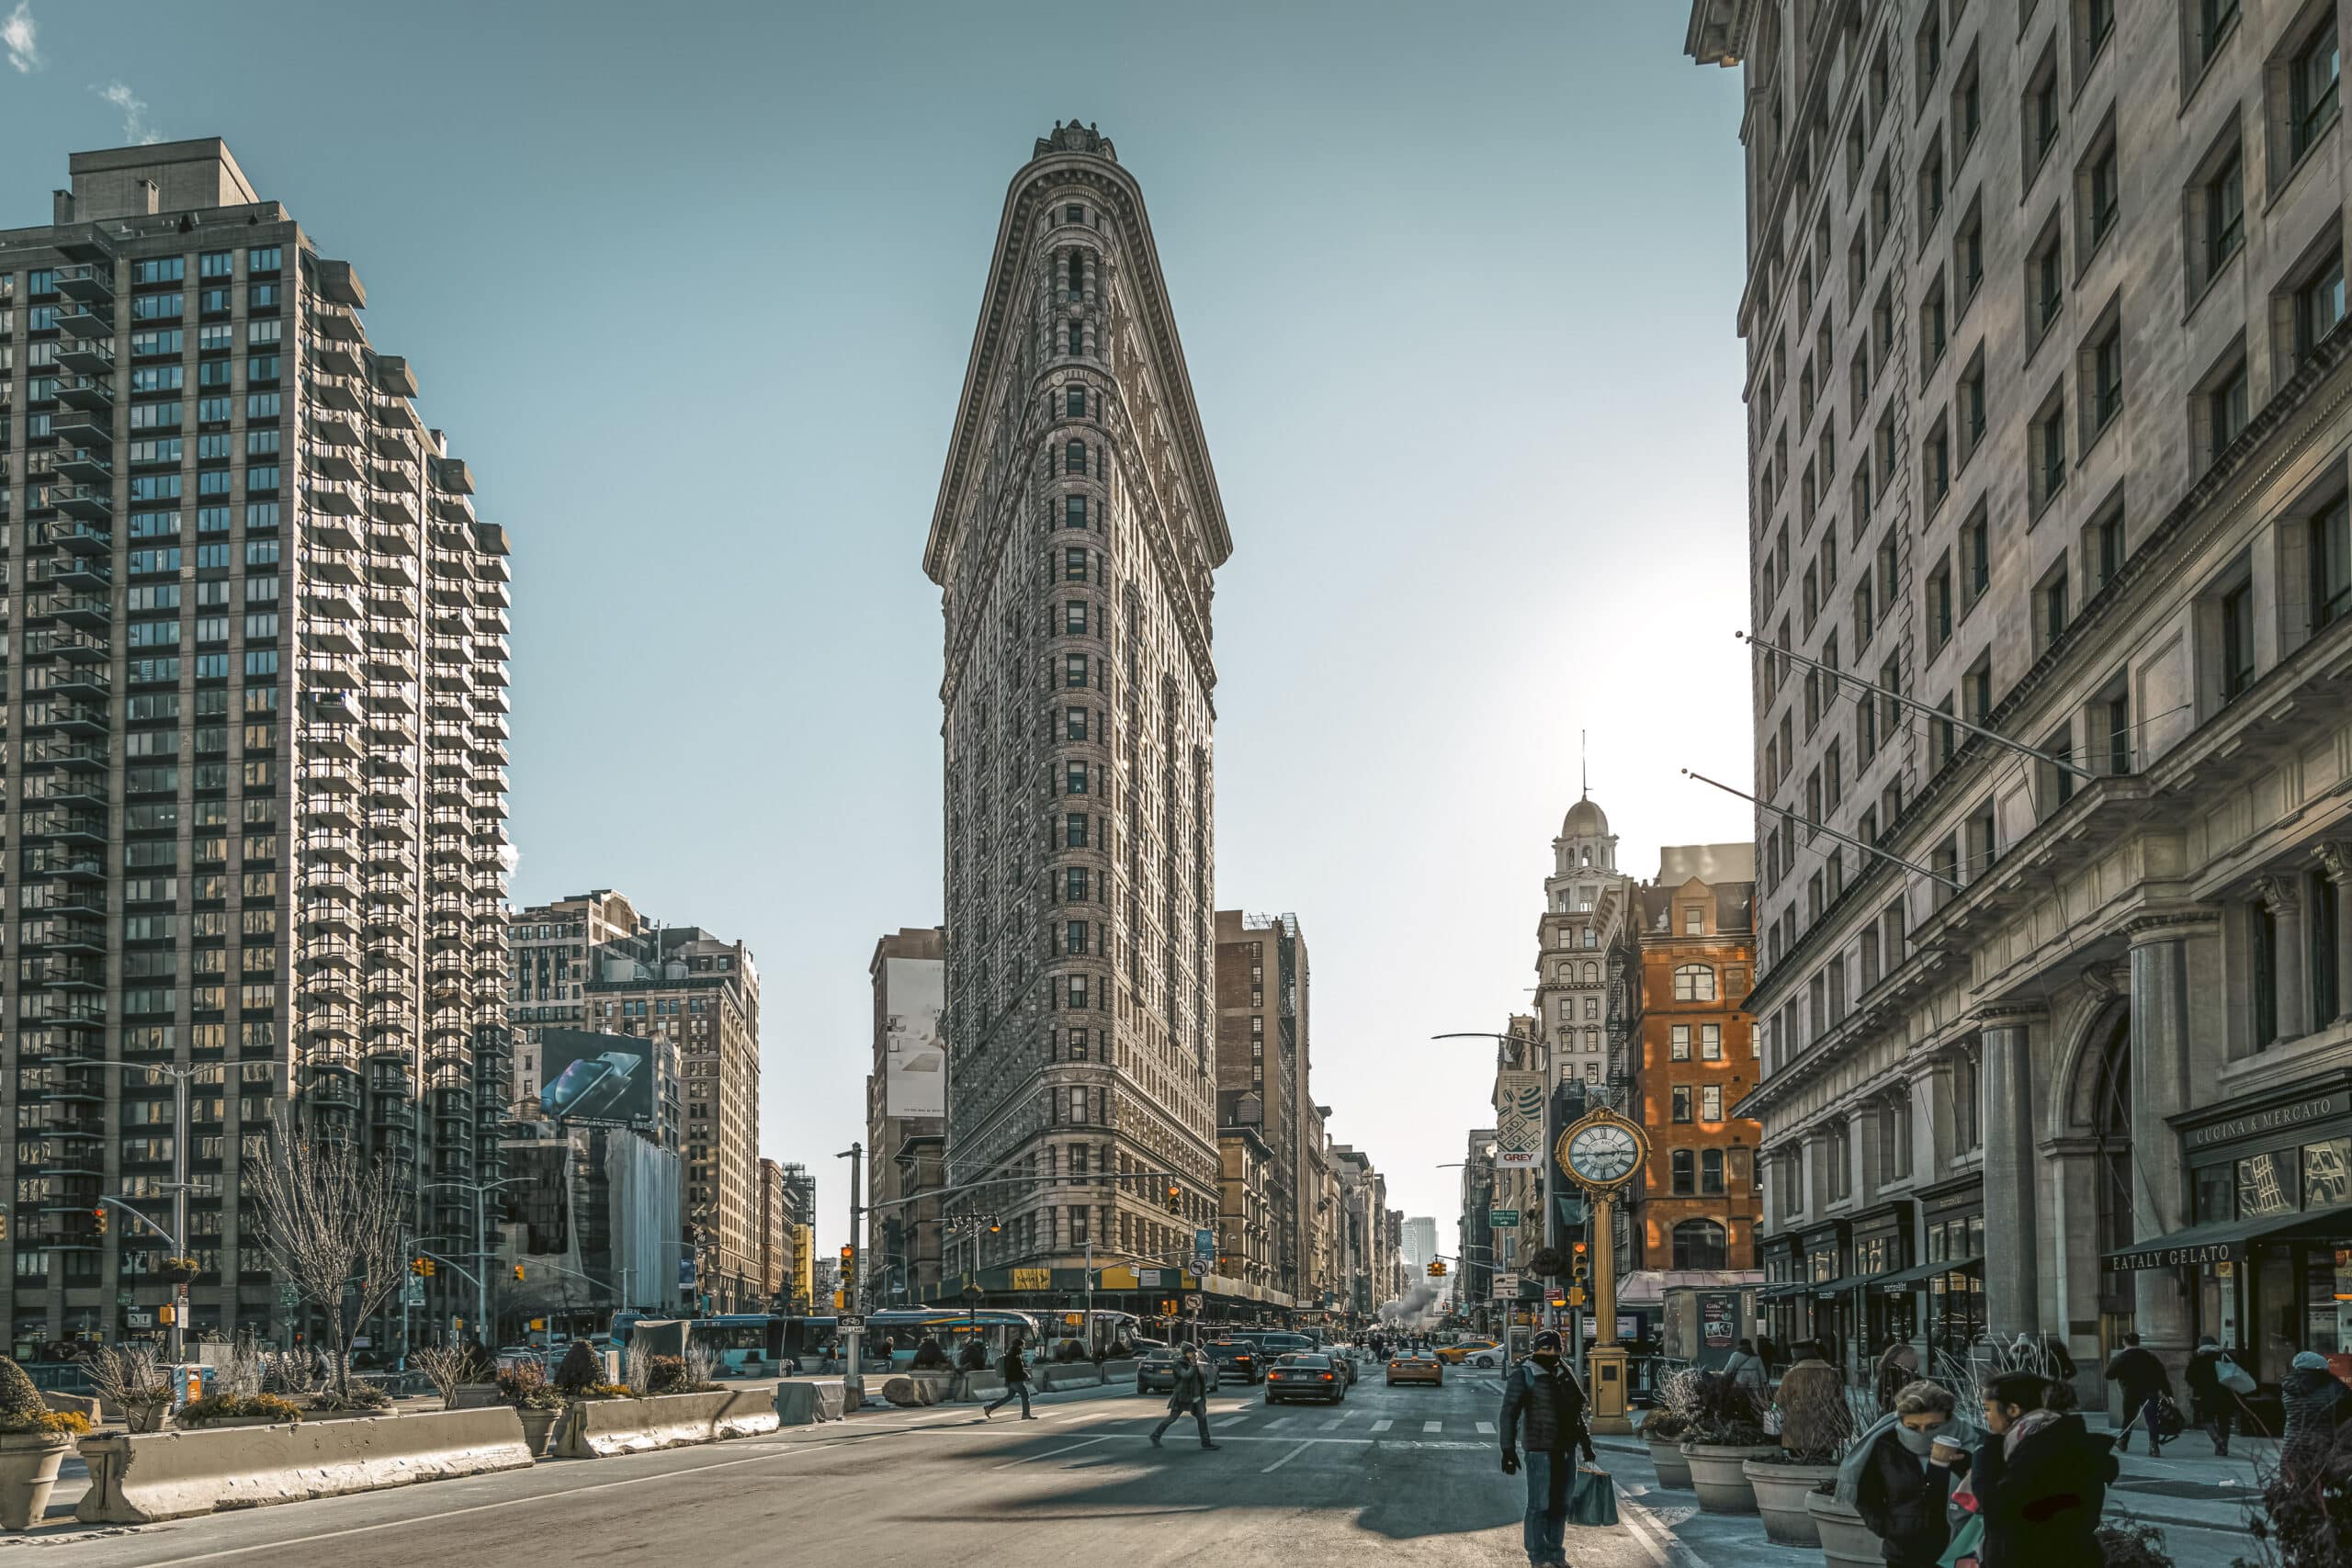 Ein Blick von der Straße auf das ikonische Flatiron Building in New York City an einem sonnigen Tag, mit Fußgängern und Verkehr auf den umliegenden Straßen und anderen modernen und älteren Gebäuden, die das historische Bauwerk flankieren. © Fotografie Tomas Rodriguez